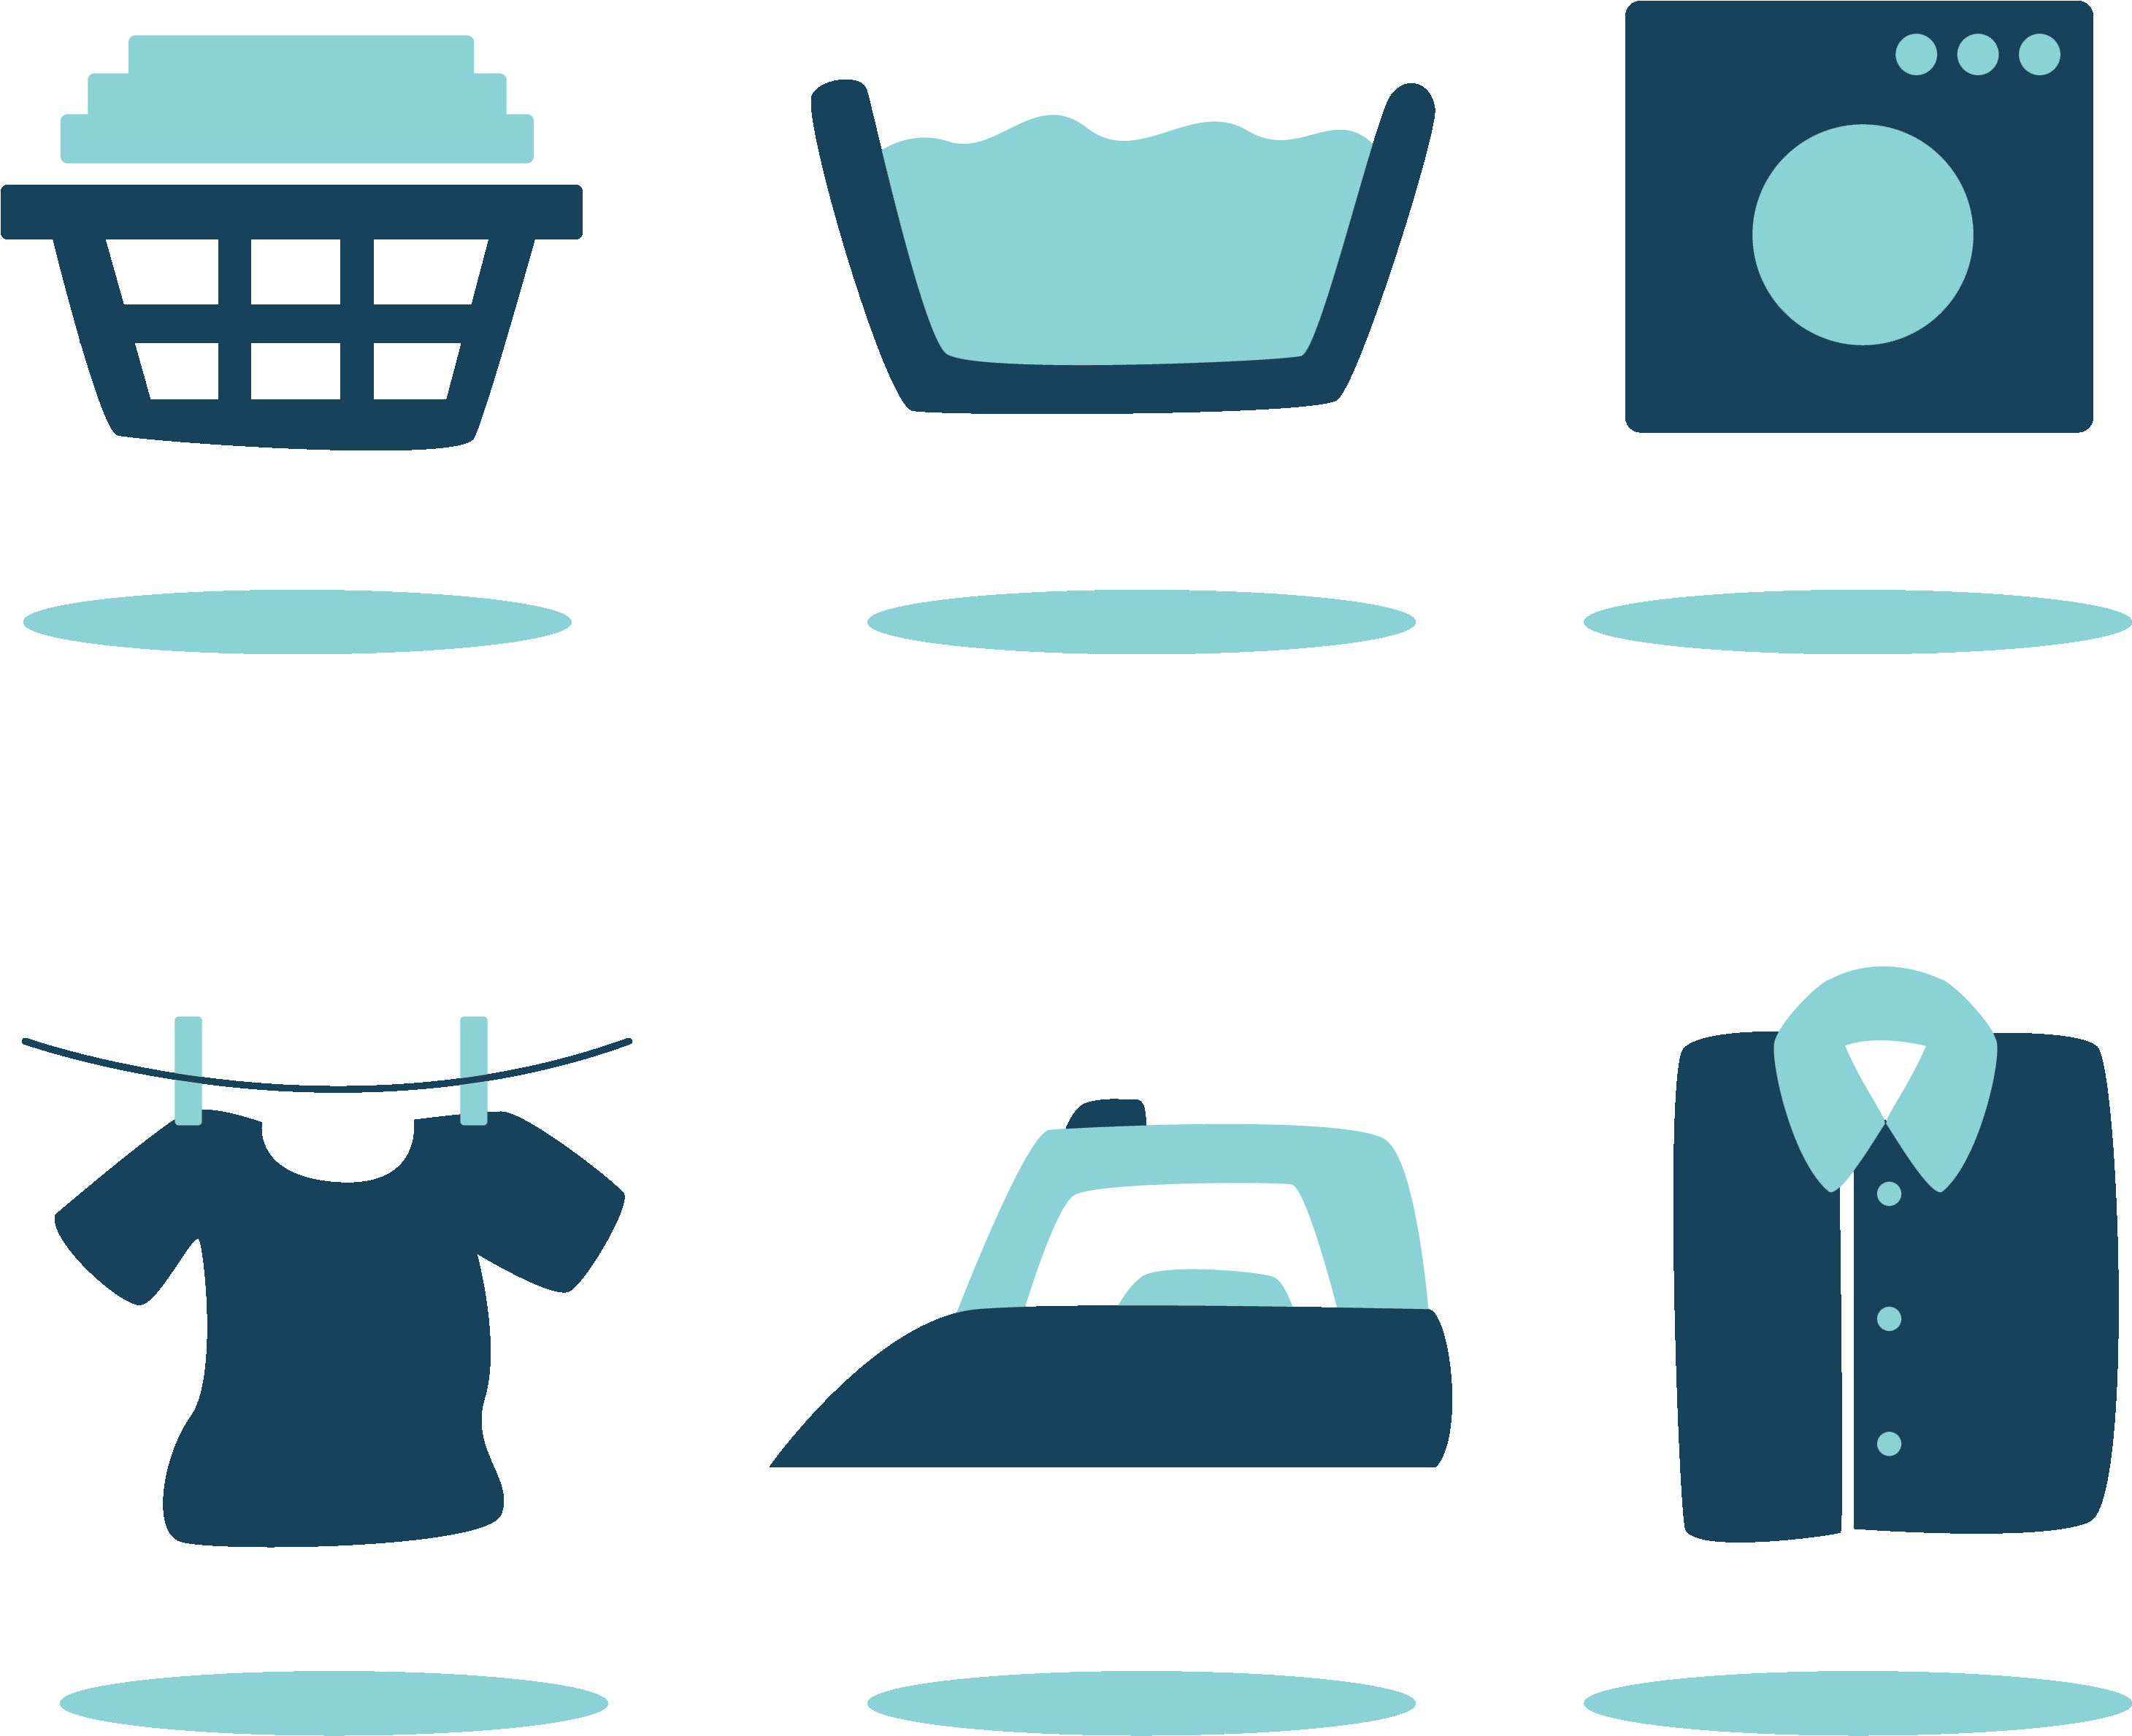 Ipad - Laundry Icons (3163x2554)